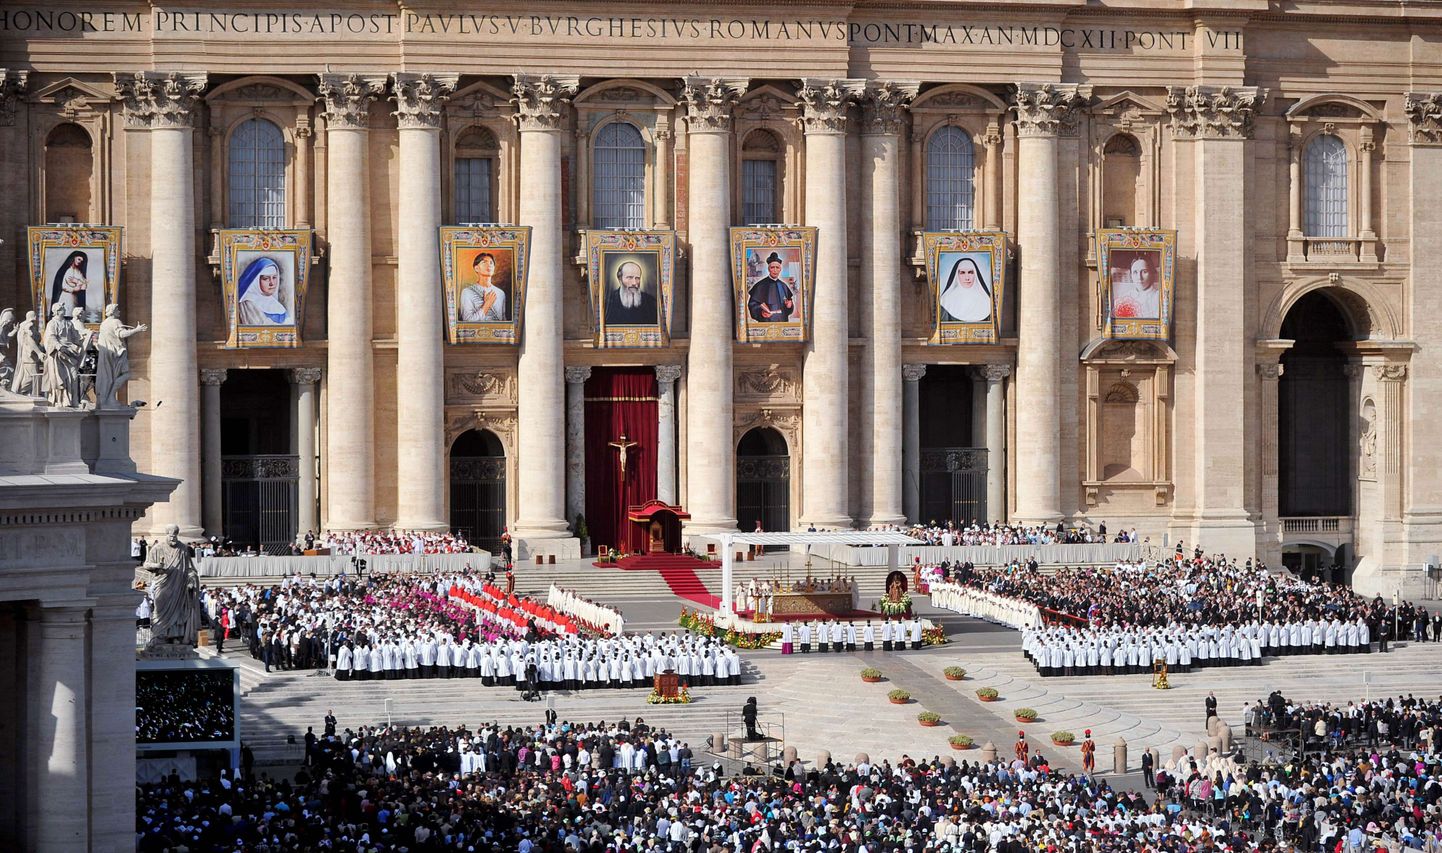 Inimesed täna Vatikanis Püha Peetruse väljakul, kus on näha seitsme uue pühaku pilte.